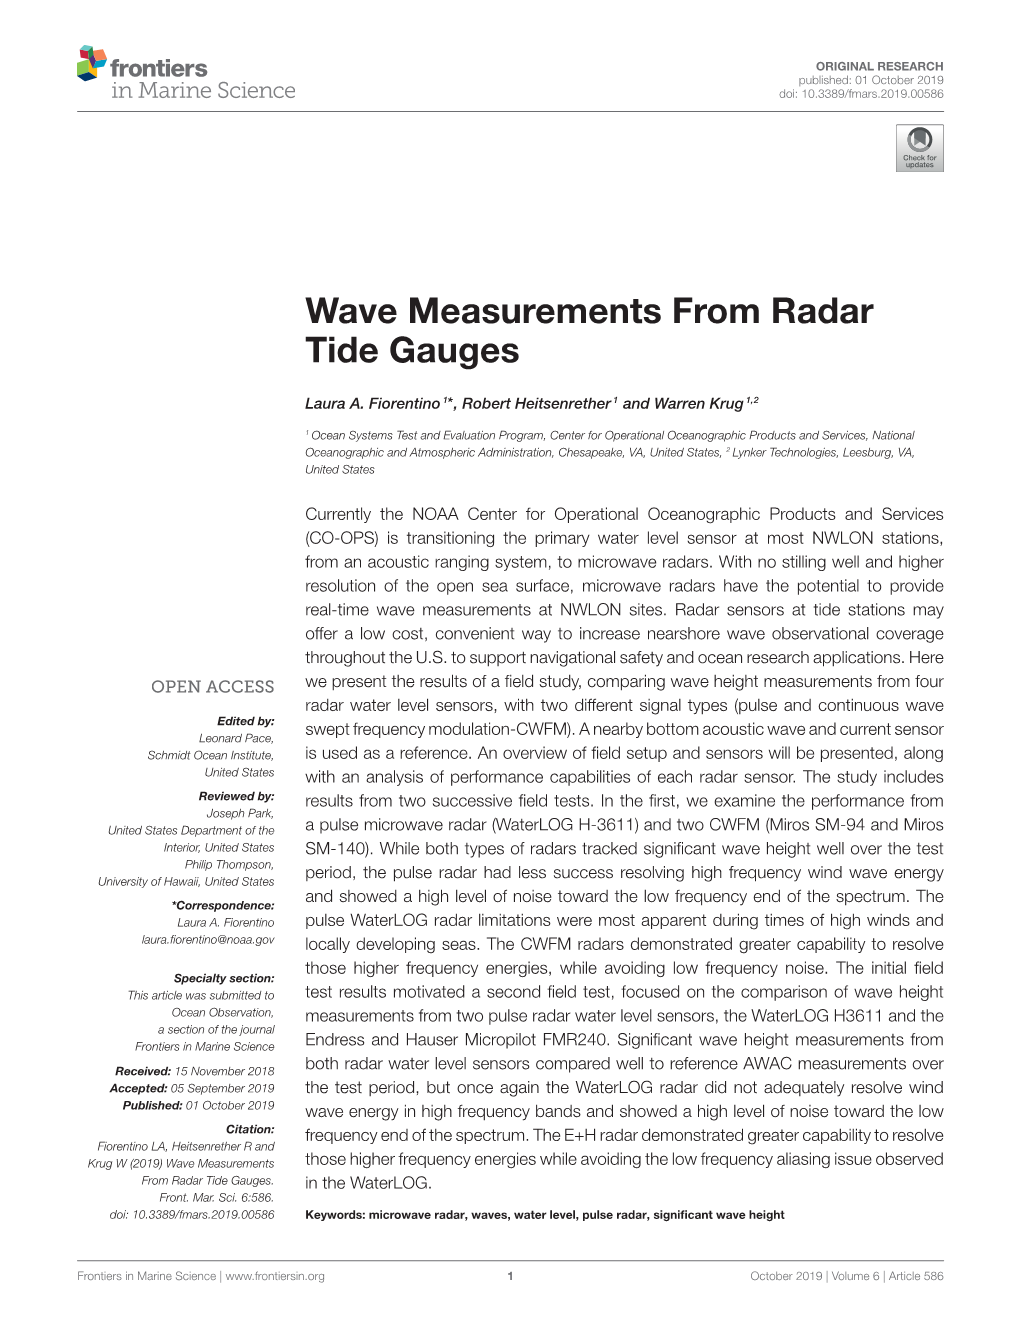 Wave Measurements from Radar Tide Gauges